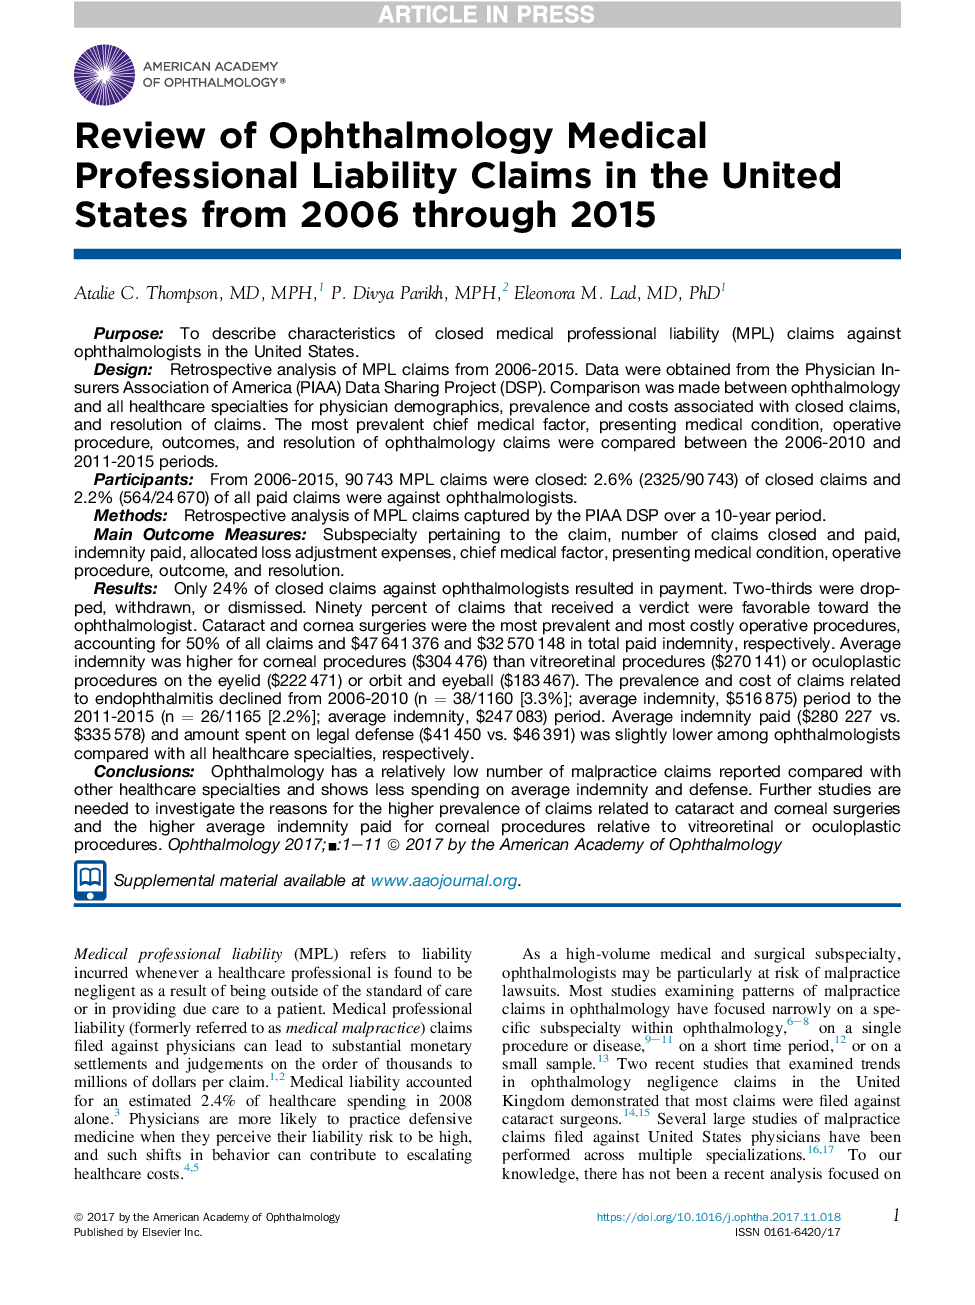 مرور اظهارنامه های پزشکی قانونی پزشکی در ایالات متحده از سال 2006 تا 2015 